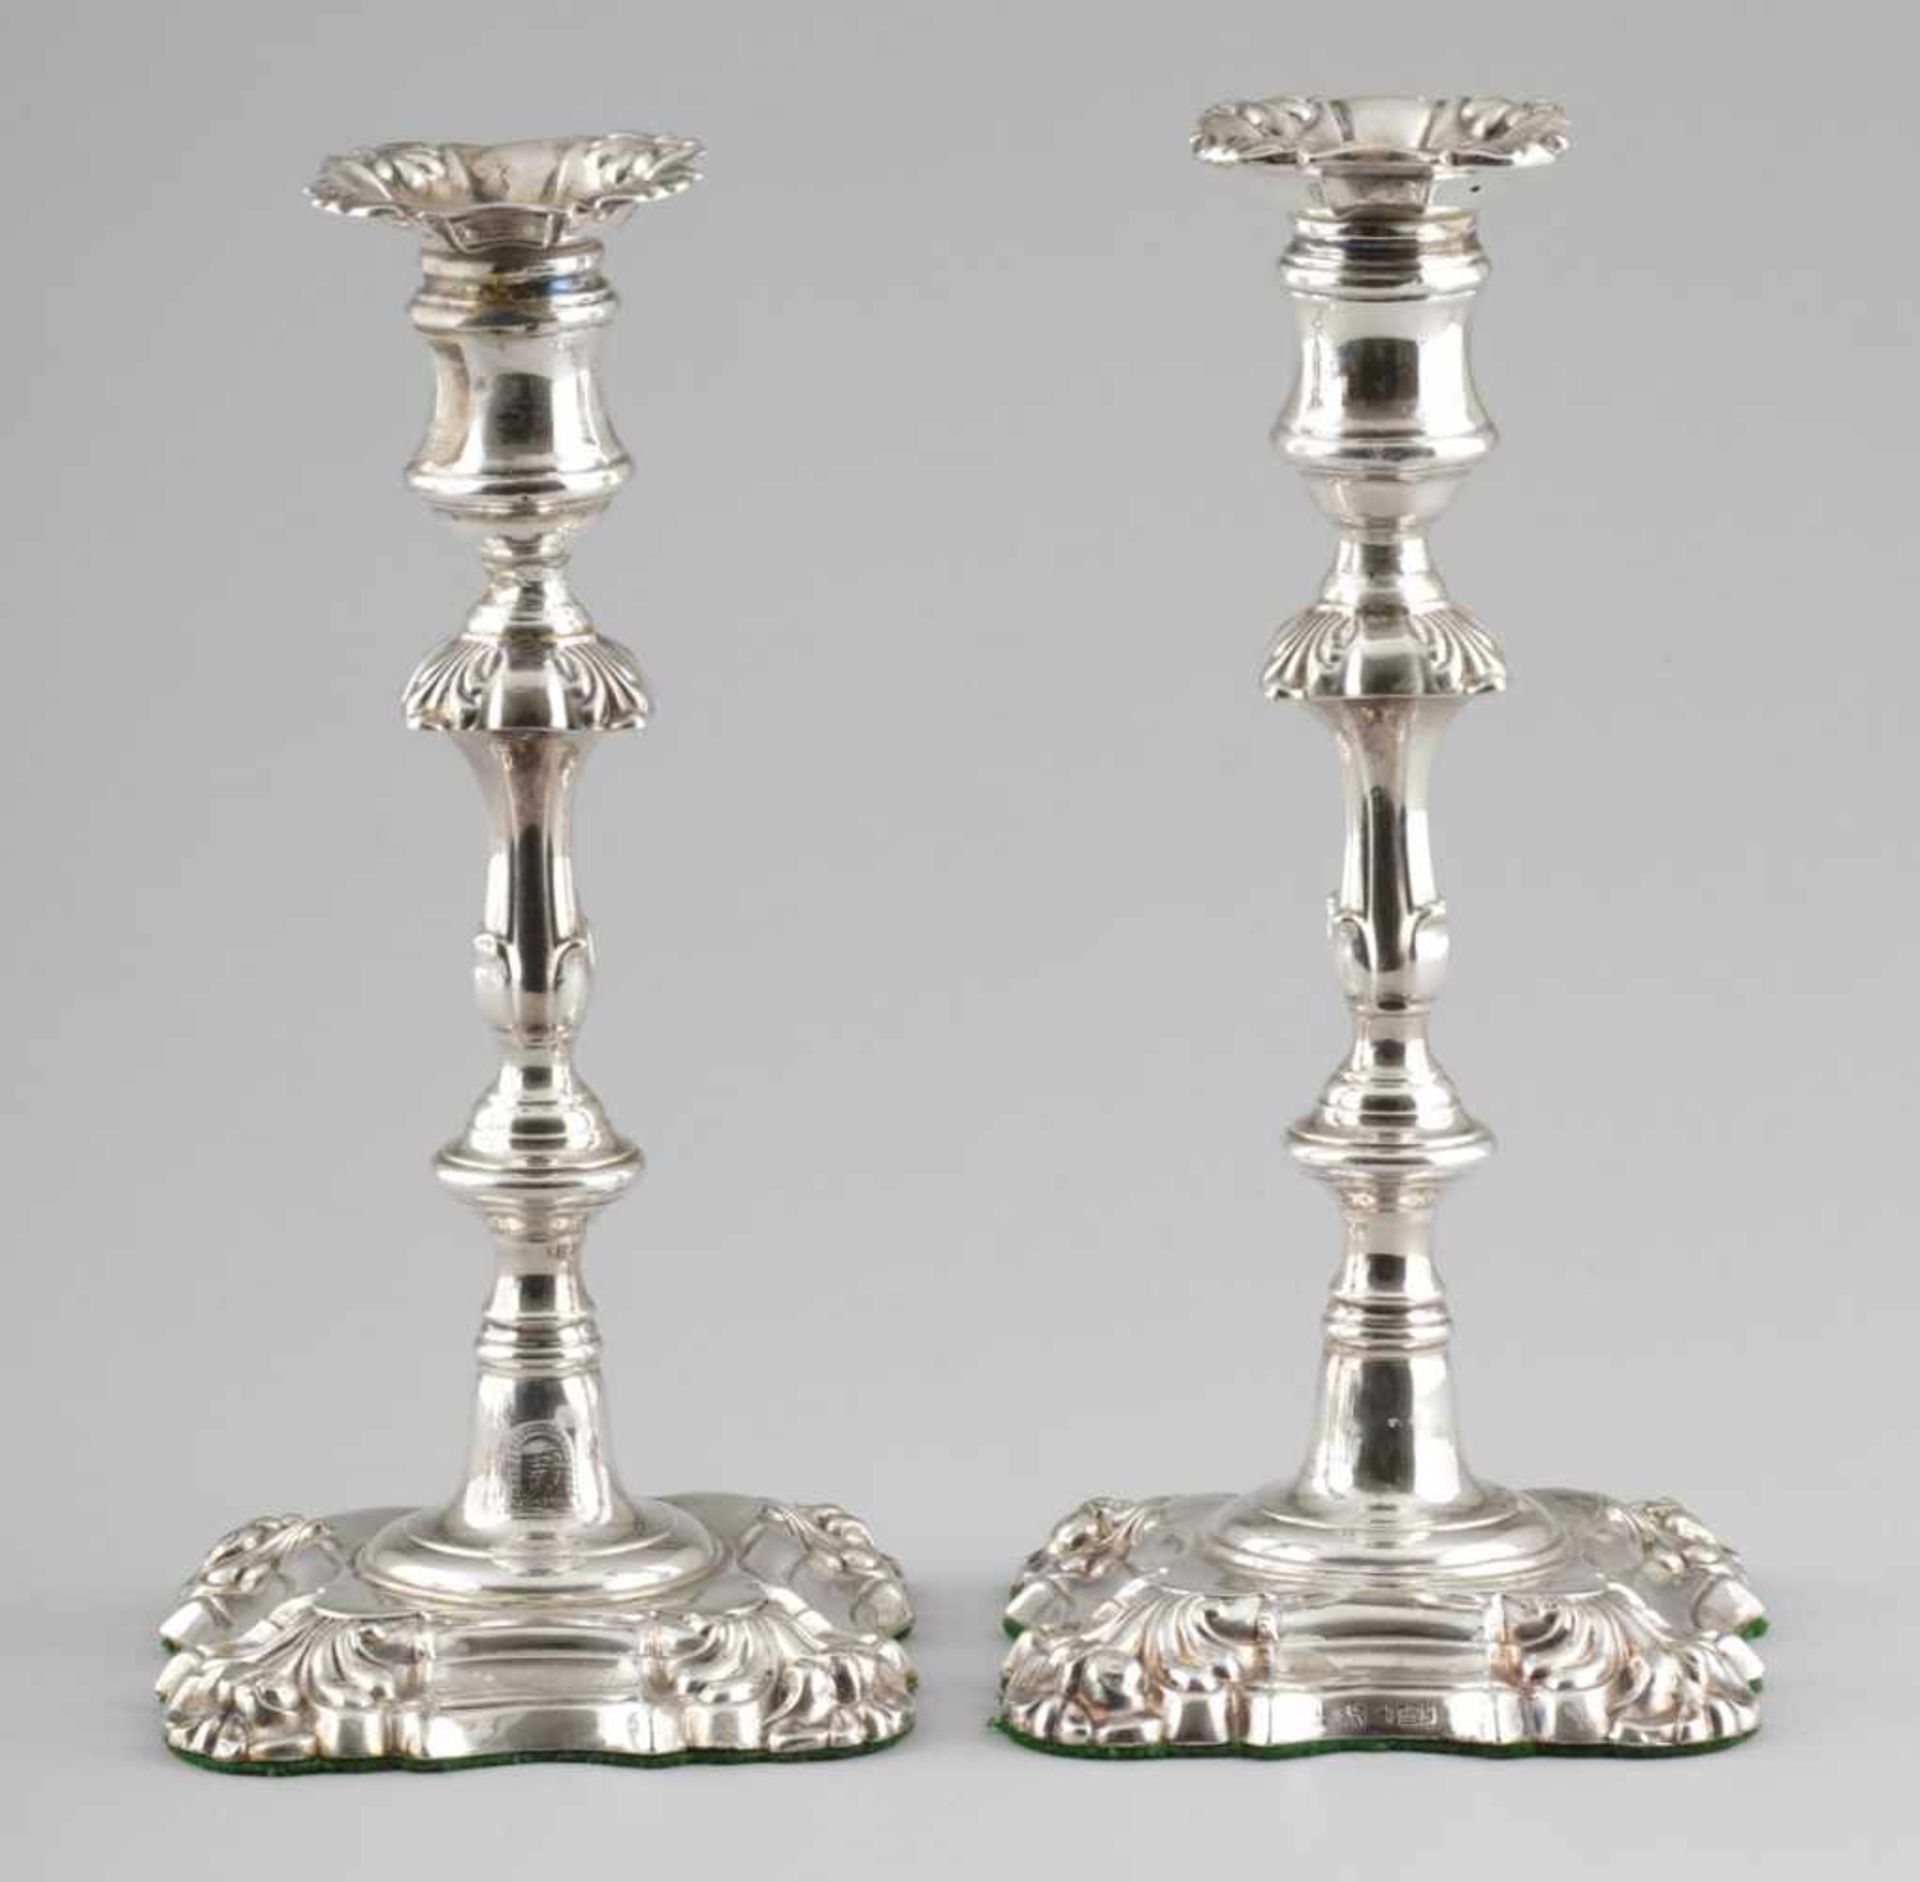 Paar Tafelleuchter / Pair of candle sticks Sheffield/England, um 1835/36. 925er Silber. Punzen: